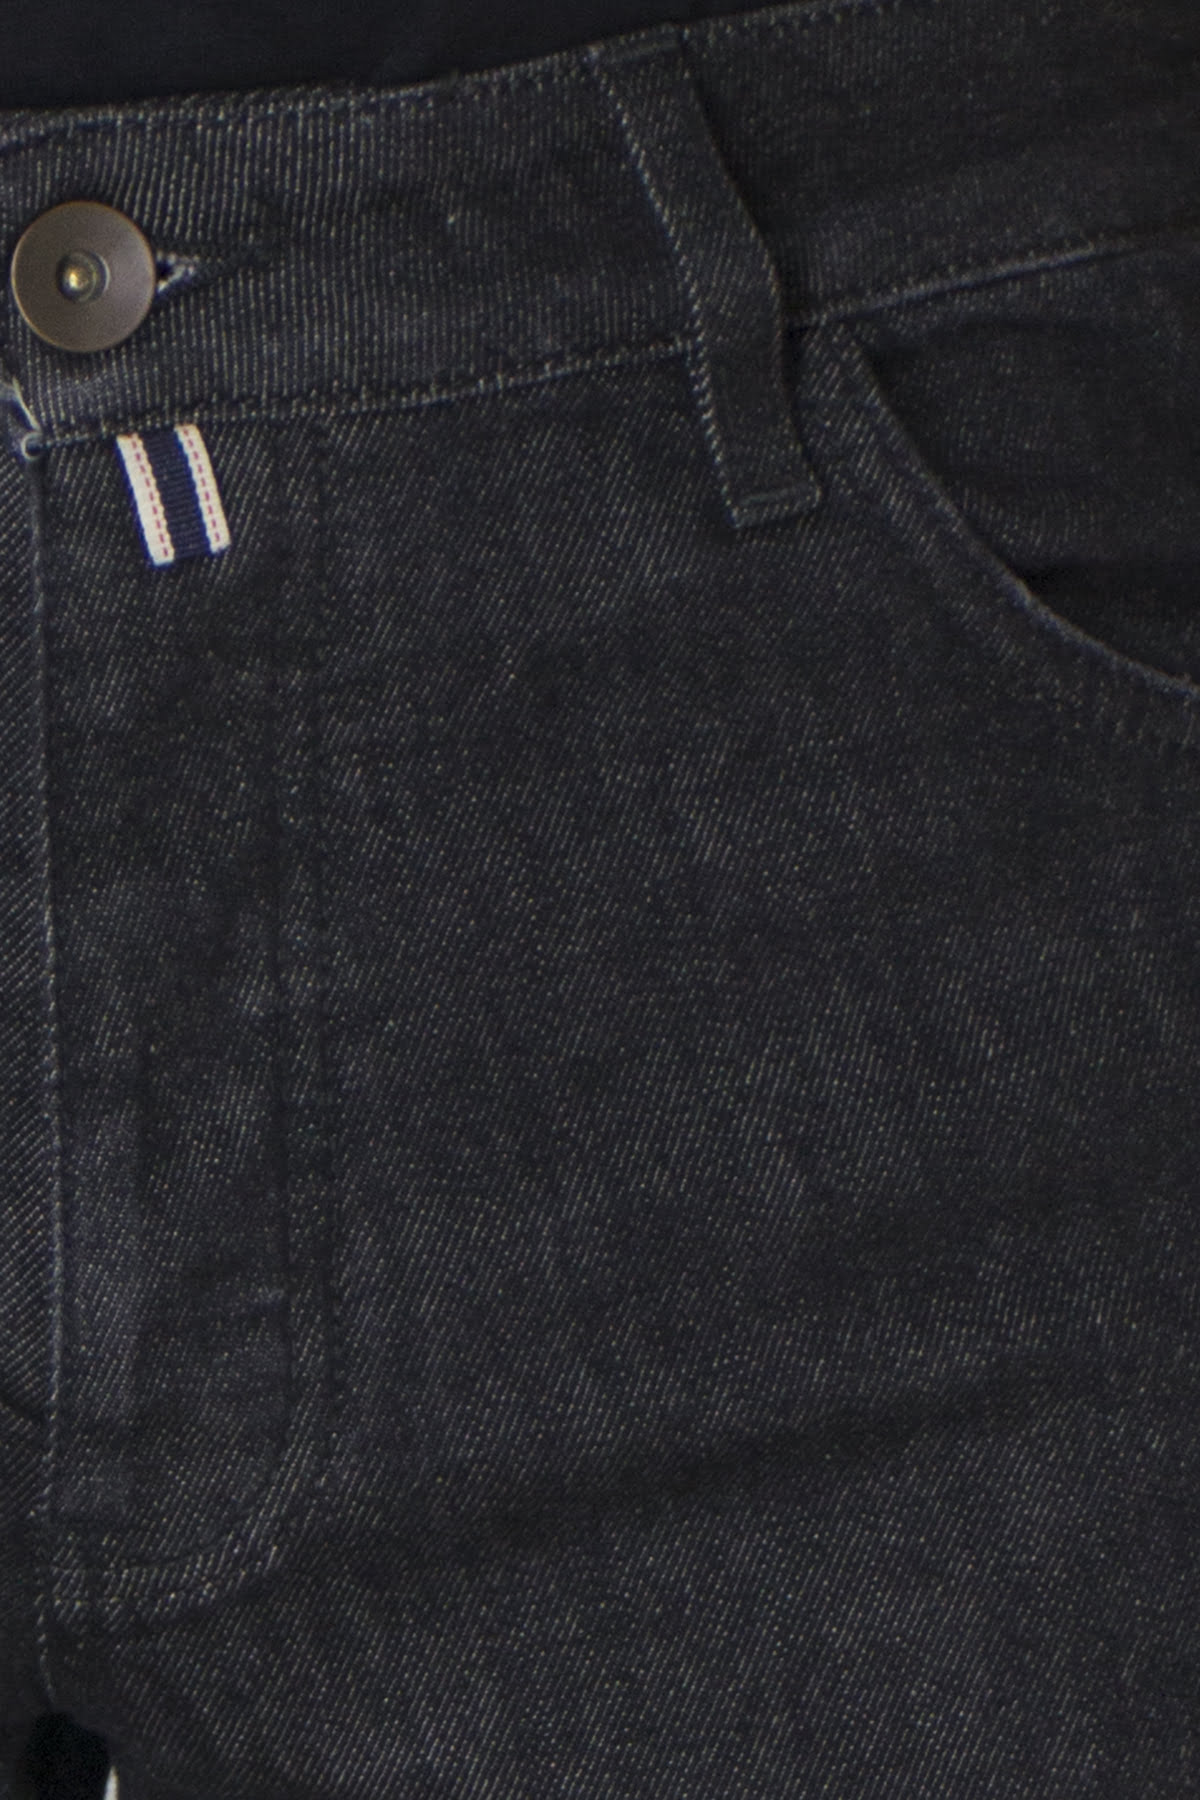 Jeans uomo grigio scuro lavaggio zero tinta unita modello 5 tasche slim fit made in italy